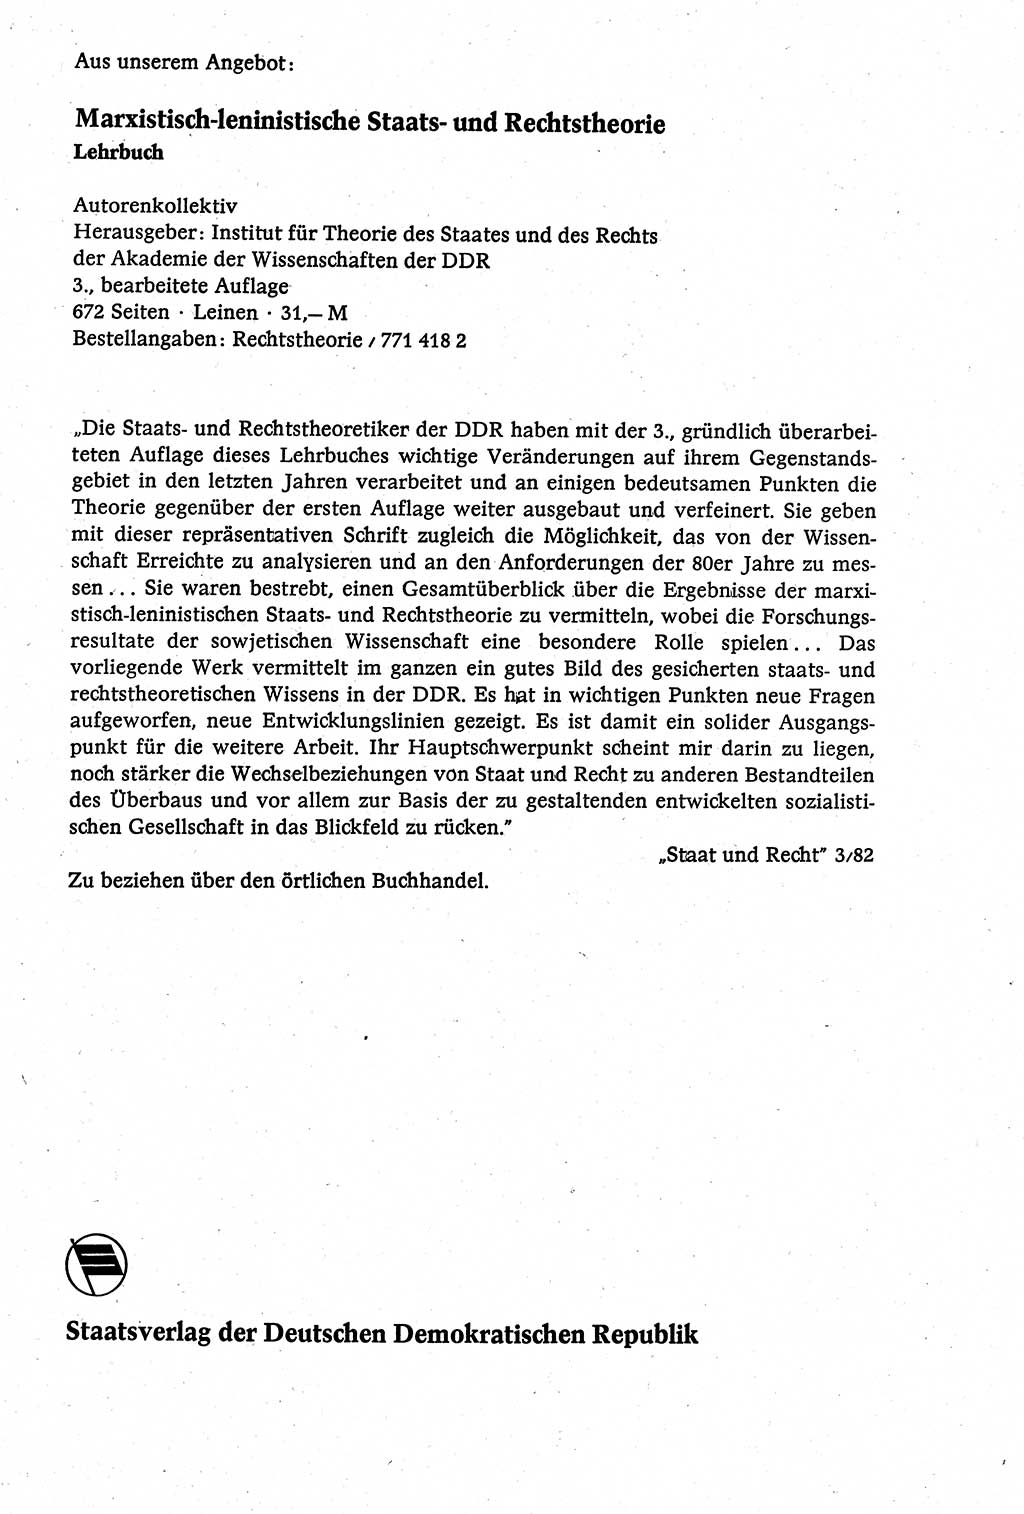 Staatsrecht der DDR [Deutsche Demokratische Republik (DDR)], Lehrbuch 1984, Seite 413 (St.-R. DDR Lb. 1984, S. 413)